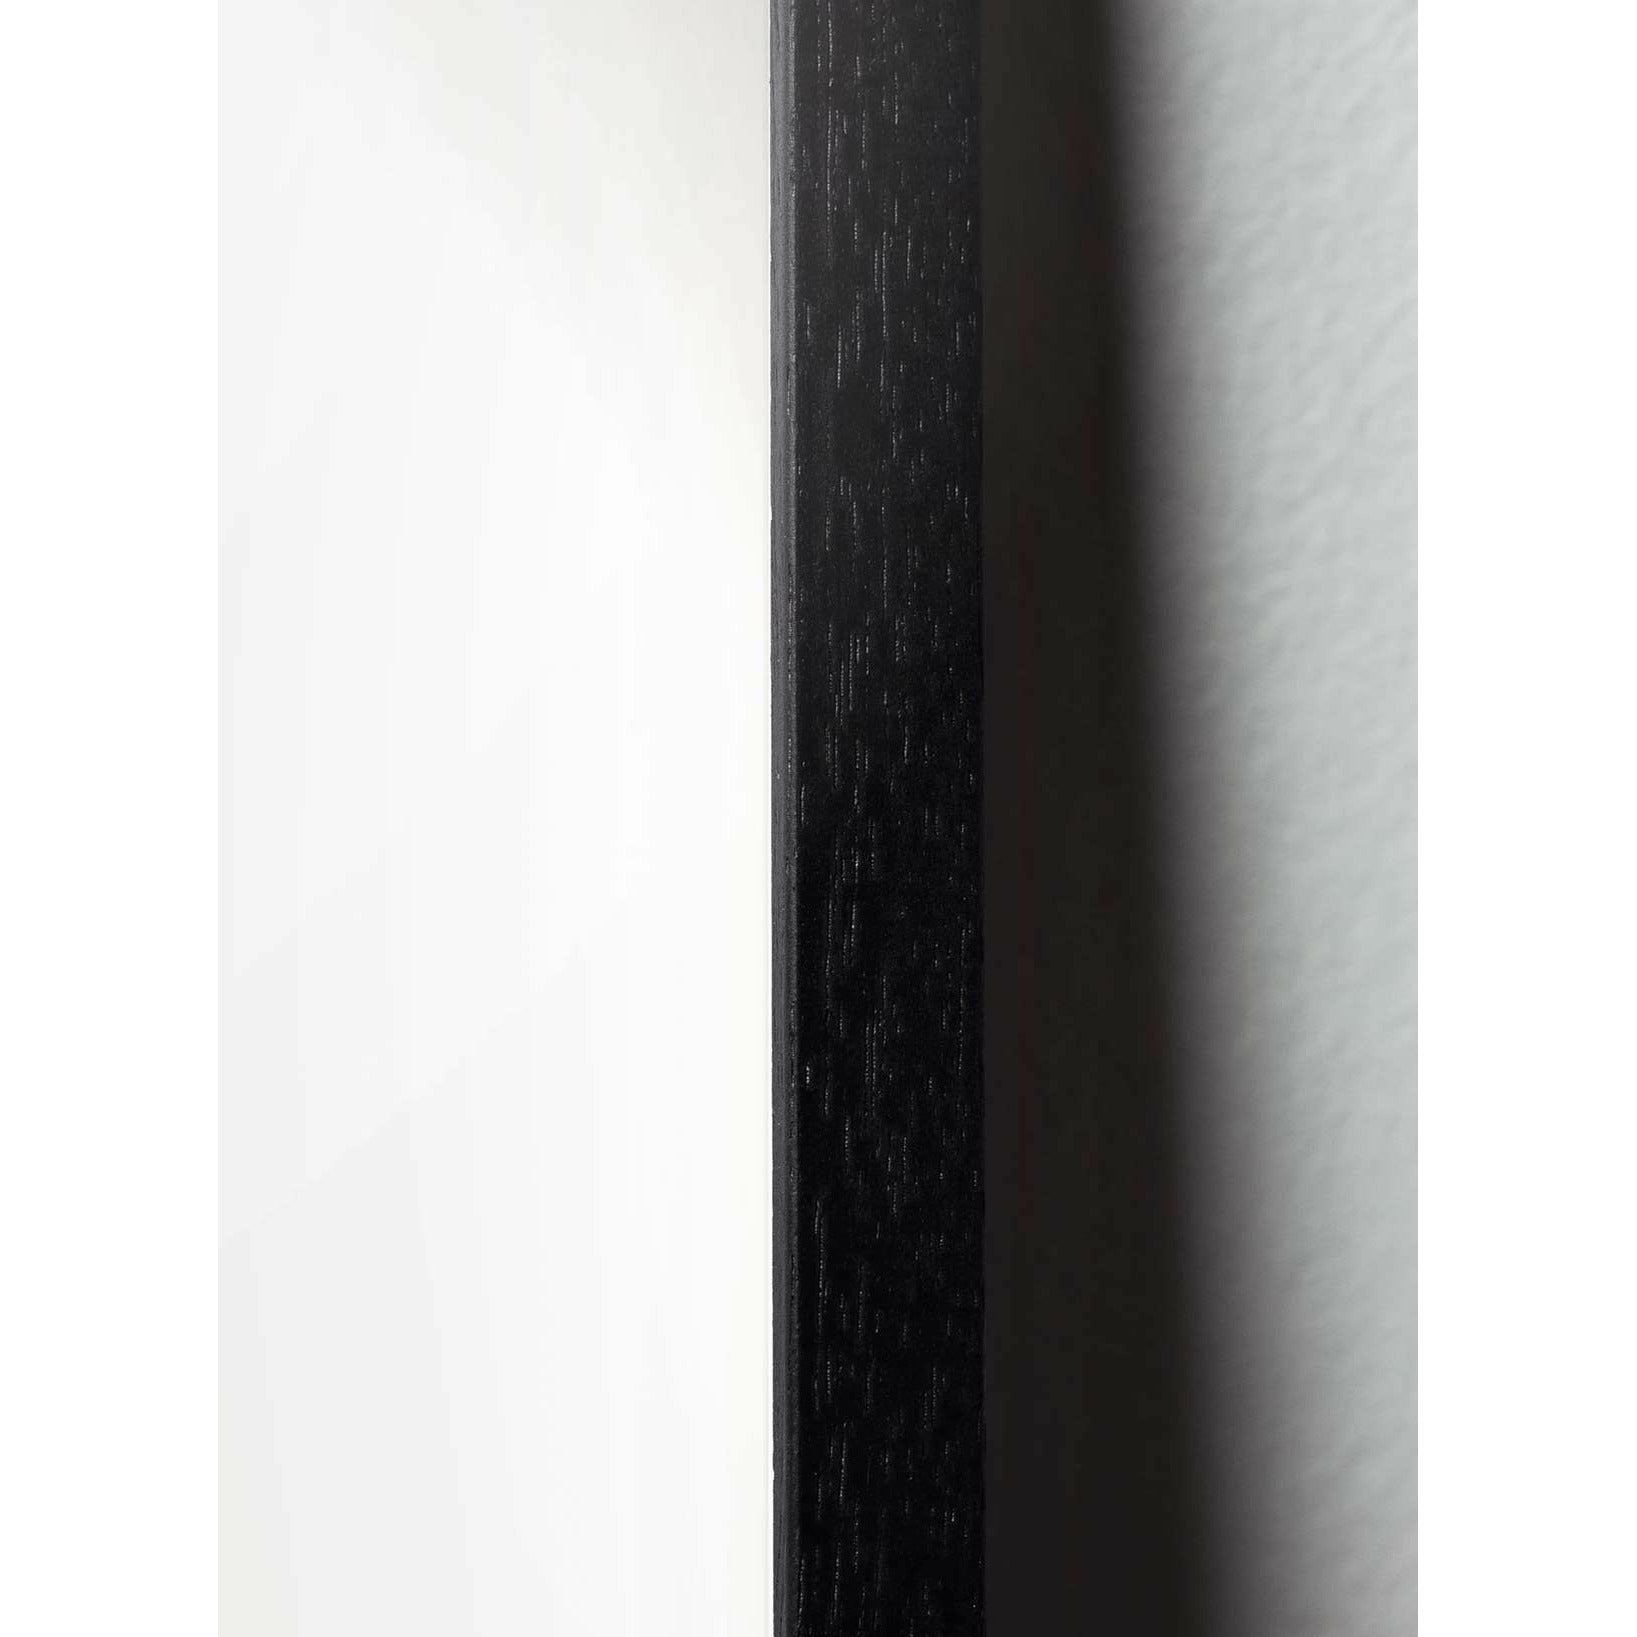 Brainchild Egg Line Poster, Rahmen aus schwarz lackiertem Holz 70x100 cm, weißer Hintergrund